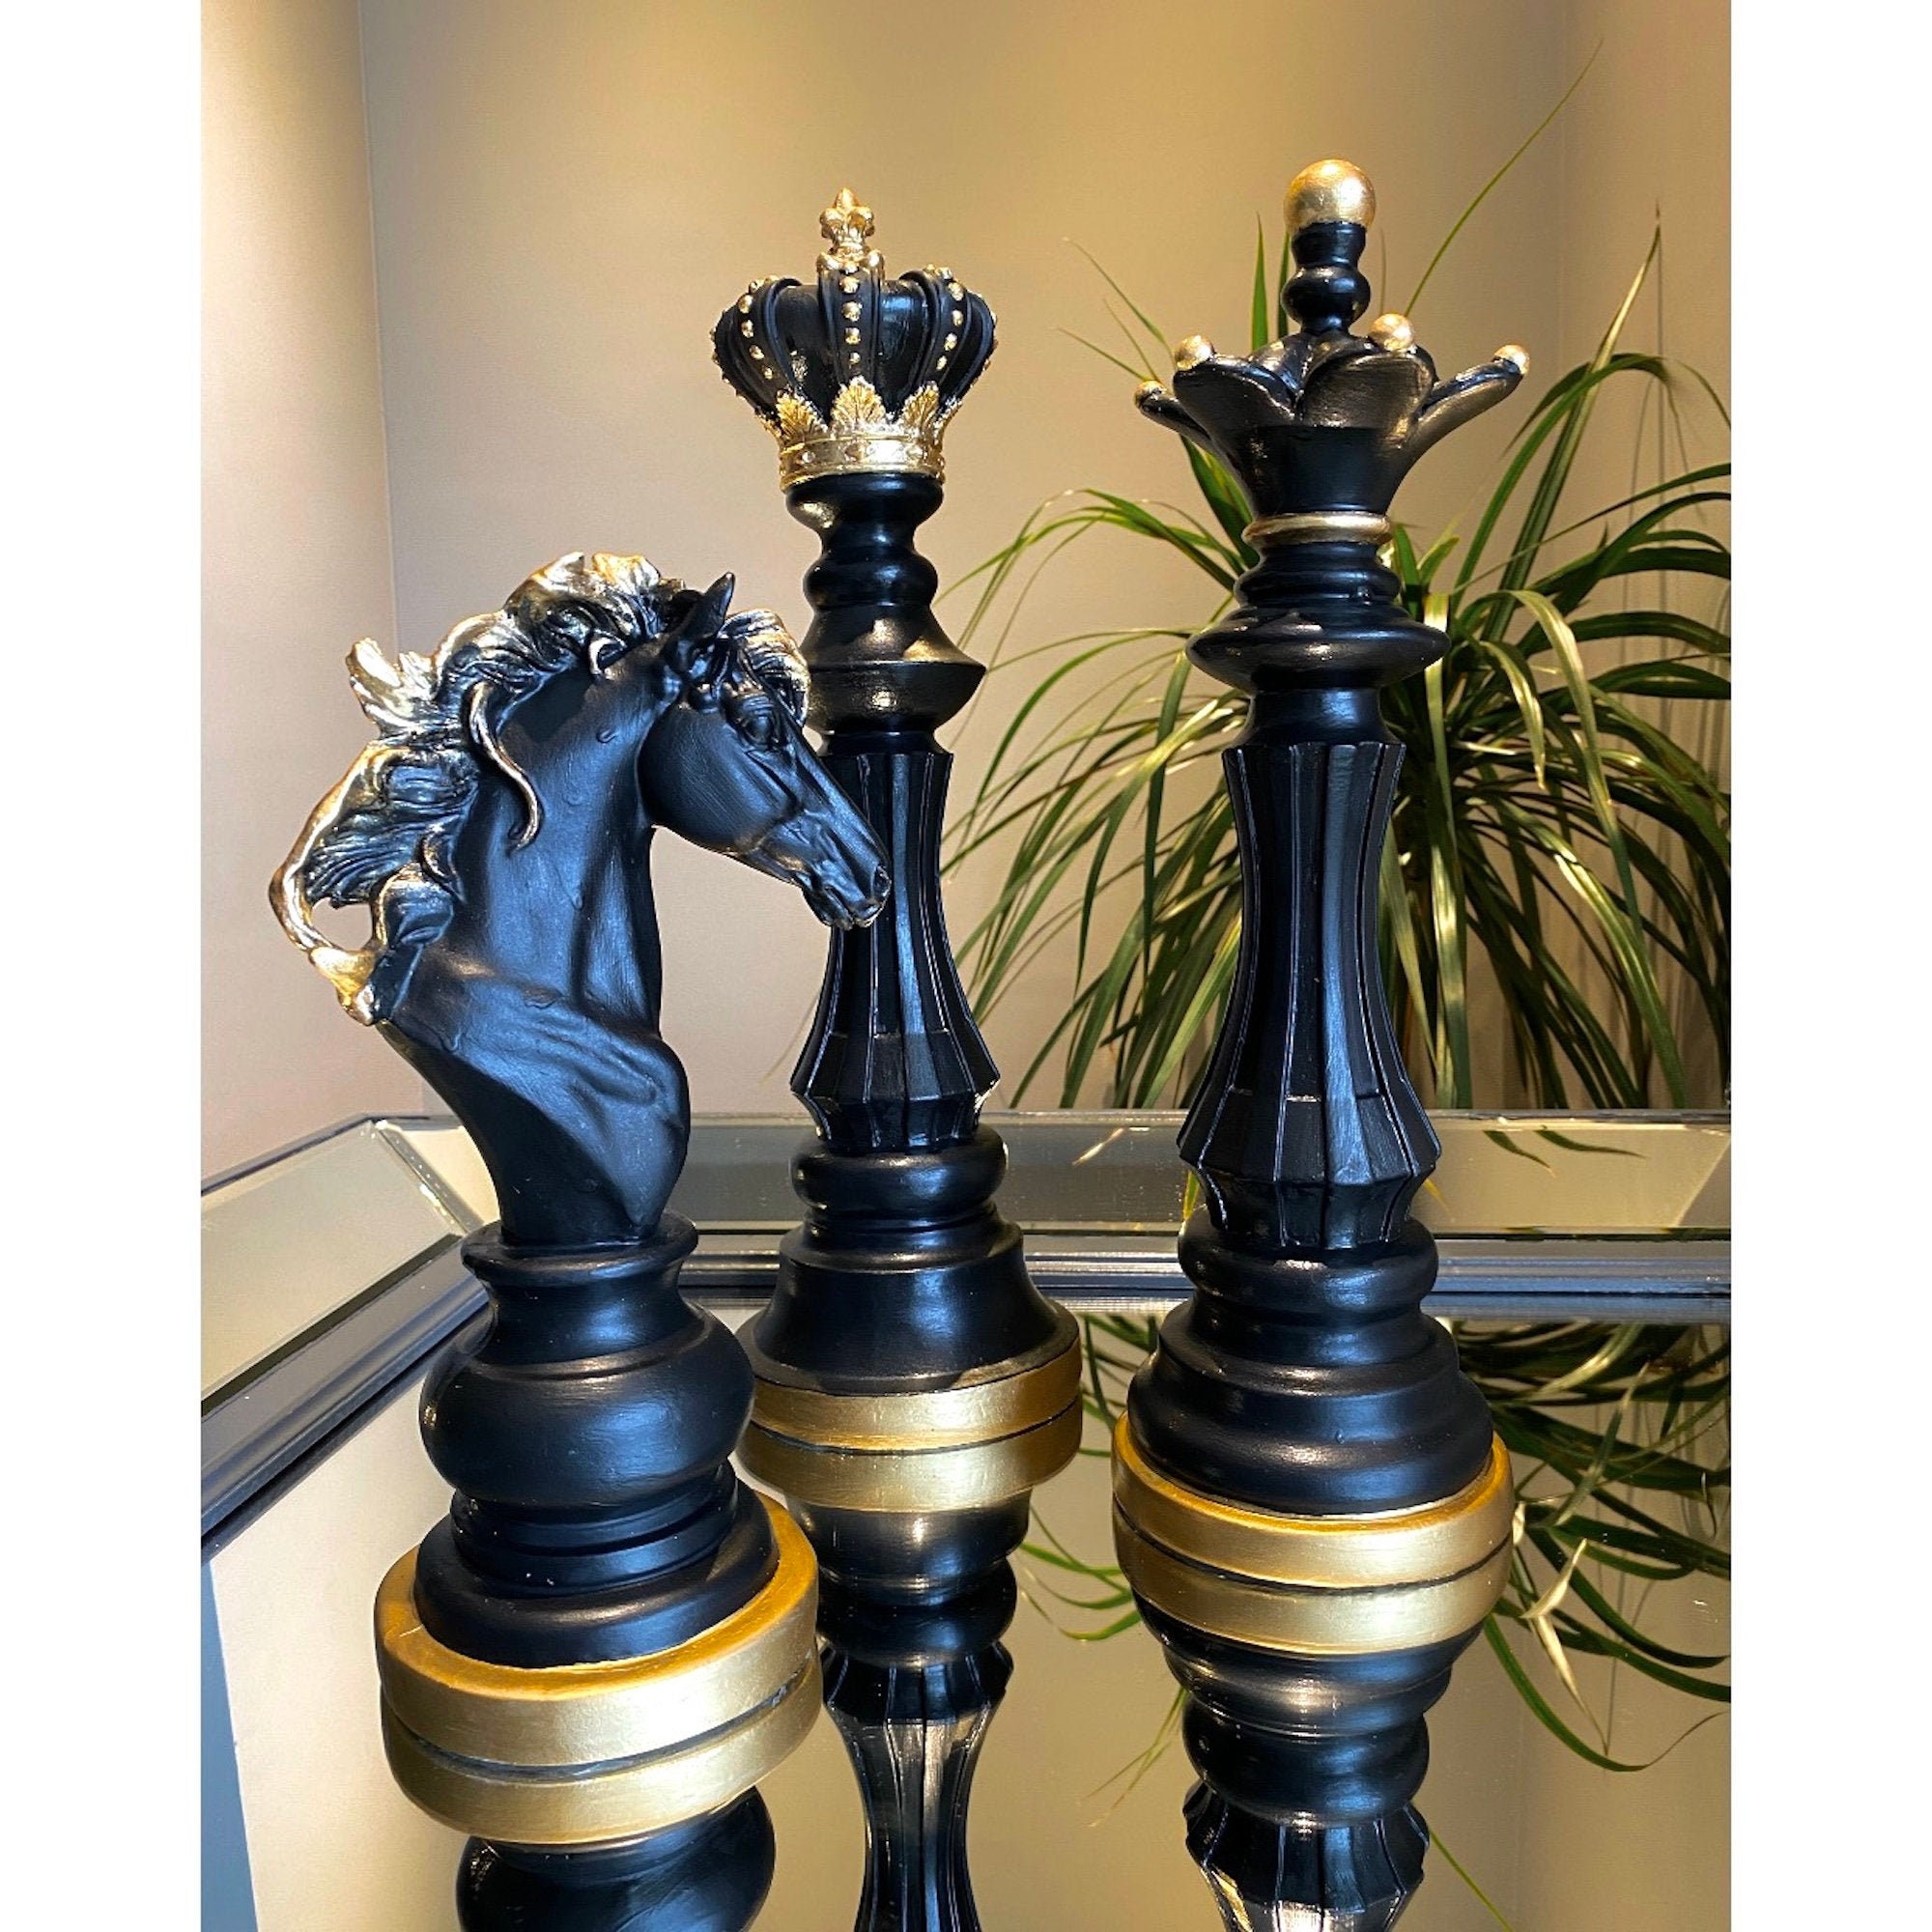 Prada Saffiano Leather Chess Set - Black Decorative Accents, Decor &  Accessories - PRA861867